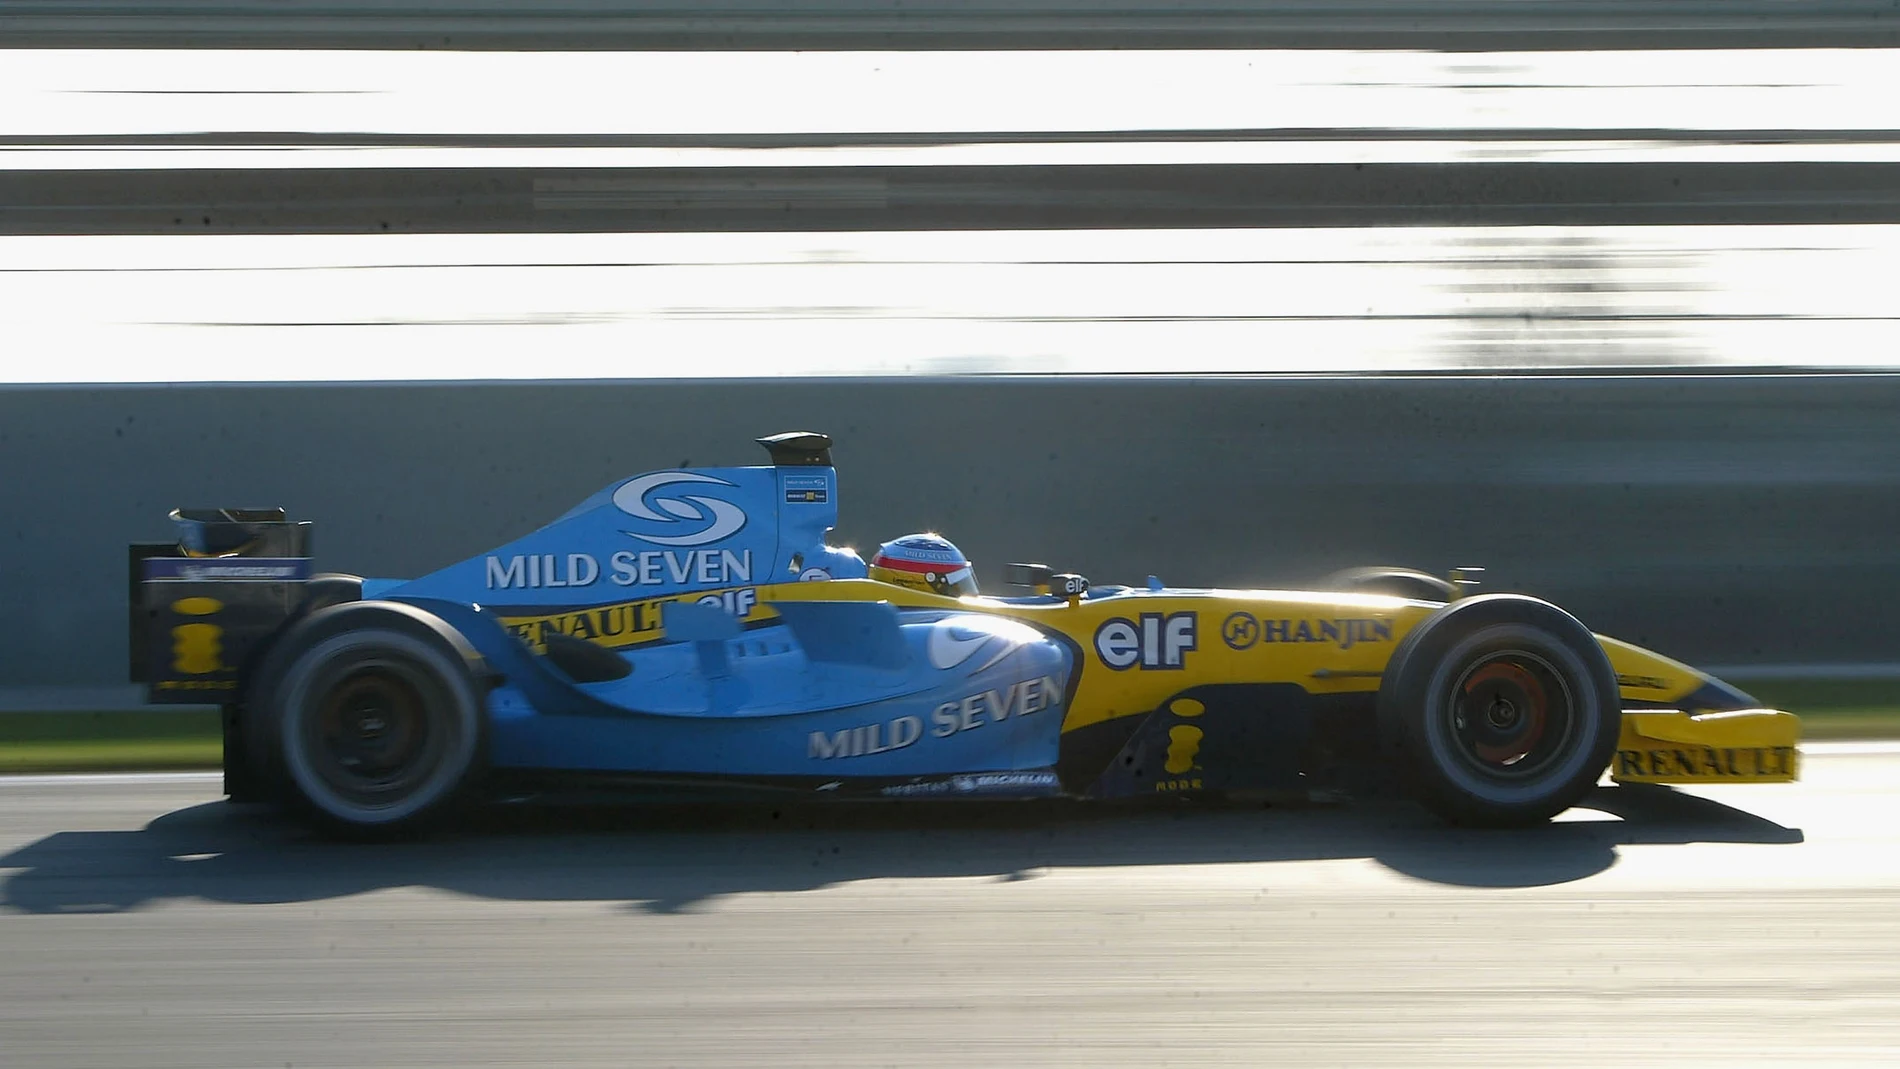 Sale a subasta el Renault R24 que pilotó Alonso en el año 2004